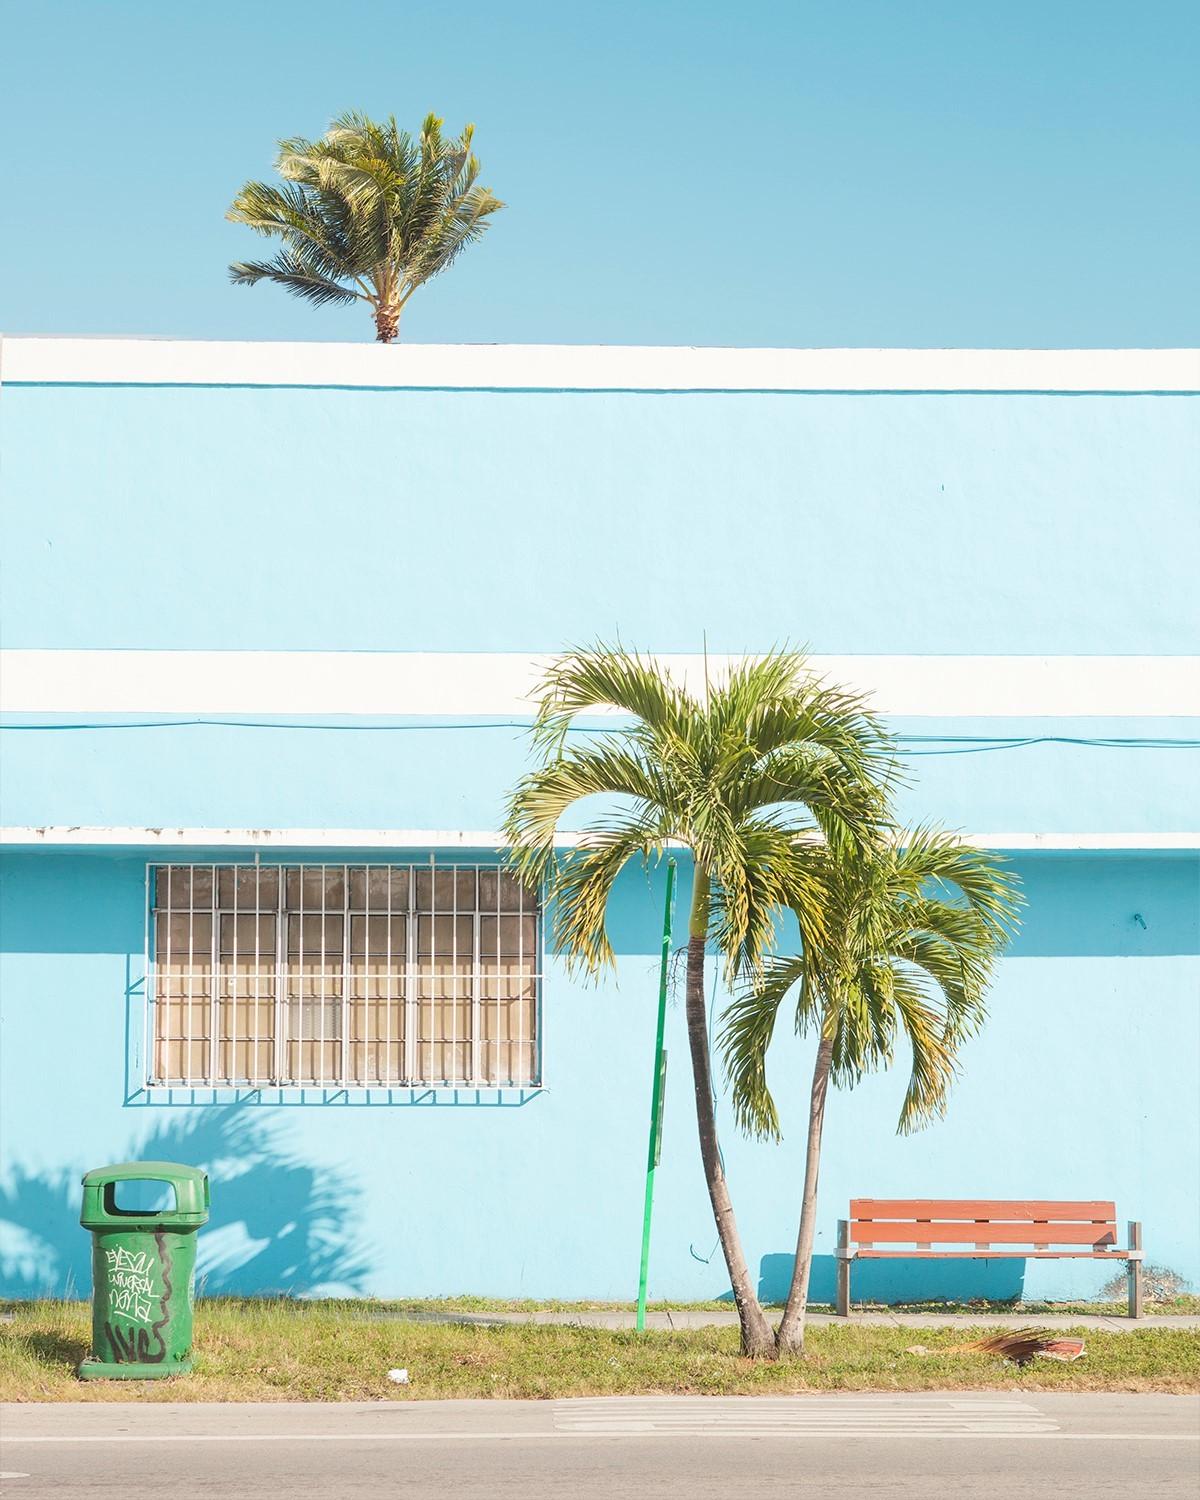 DIALOGUE 02 ist ein Werk des zeitgenössischen französischen Fotografen Matthieu Venot. In dieser Serie durchstreift er die Stadt Miami auf der Suche nach Deco-Architektur. Mit seiner Kamera zerlegt er die urbane Landschaft in Bilder, bei denen der